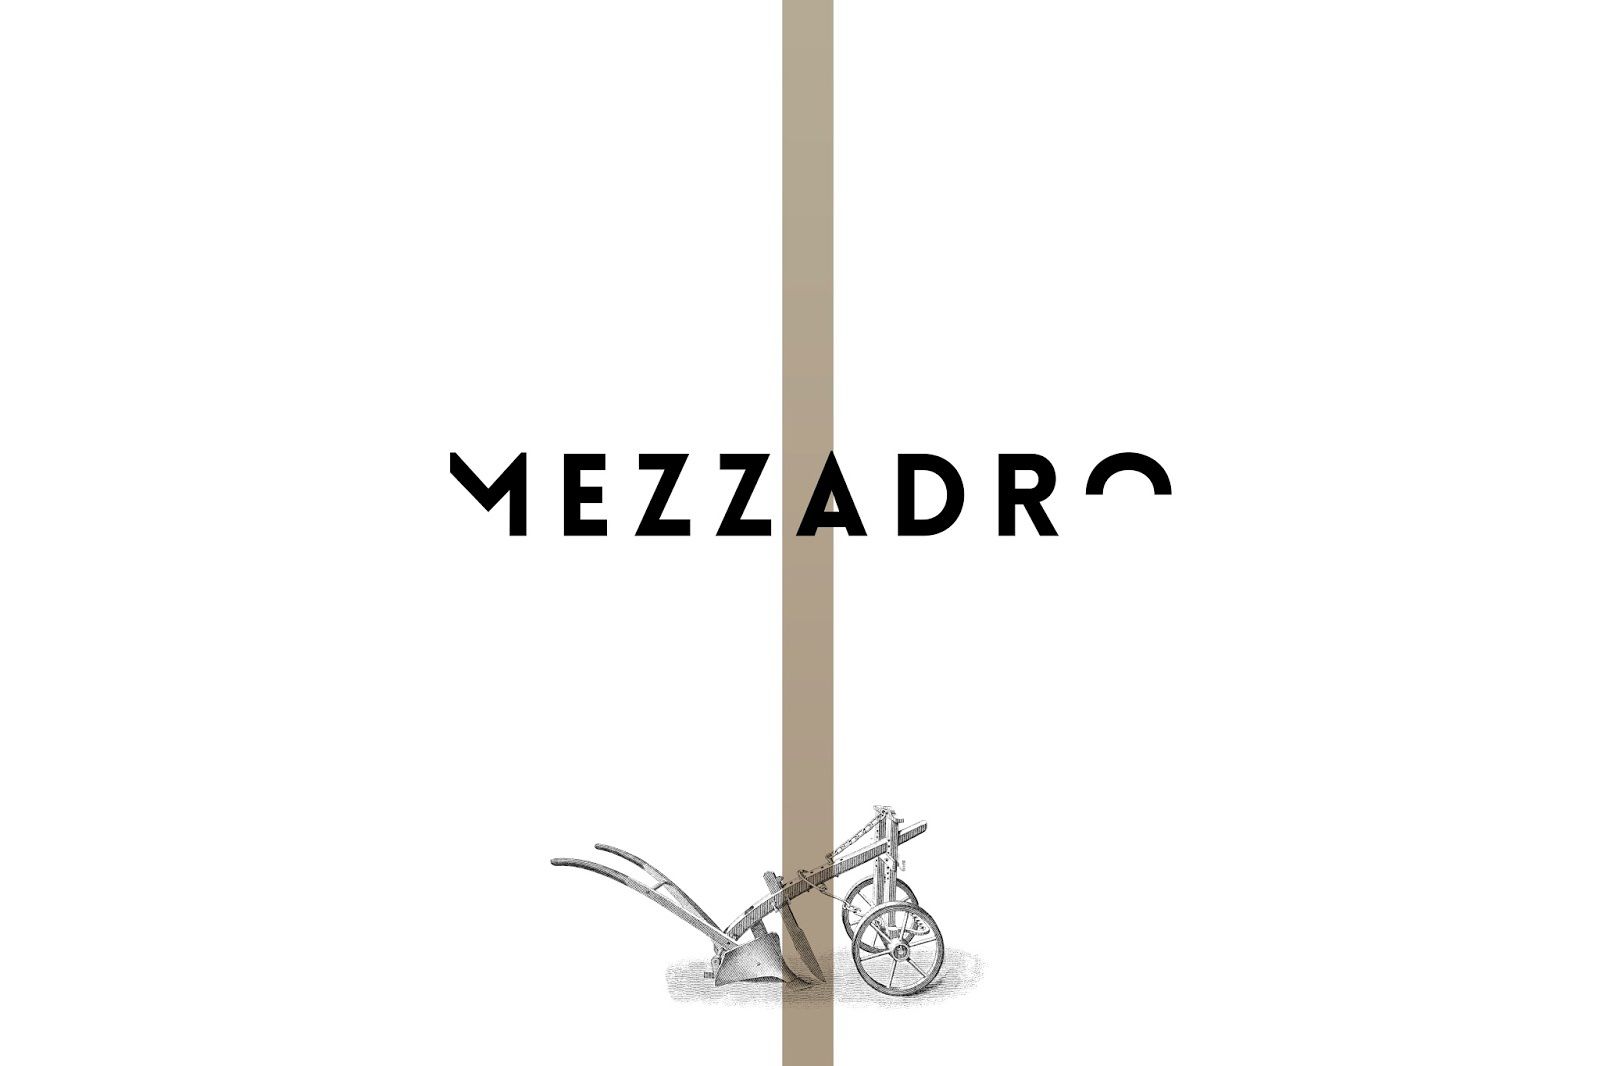  Mezzadro -  Mezzadro Winery (vins italiens) | Design : Spazio Di Paolo, Italie (août 2016)